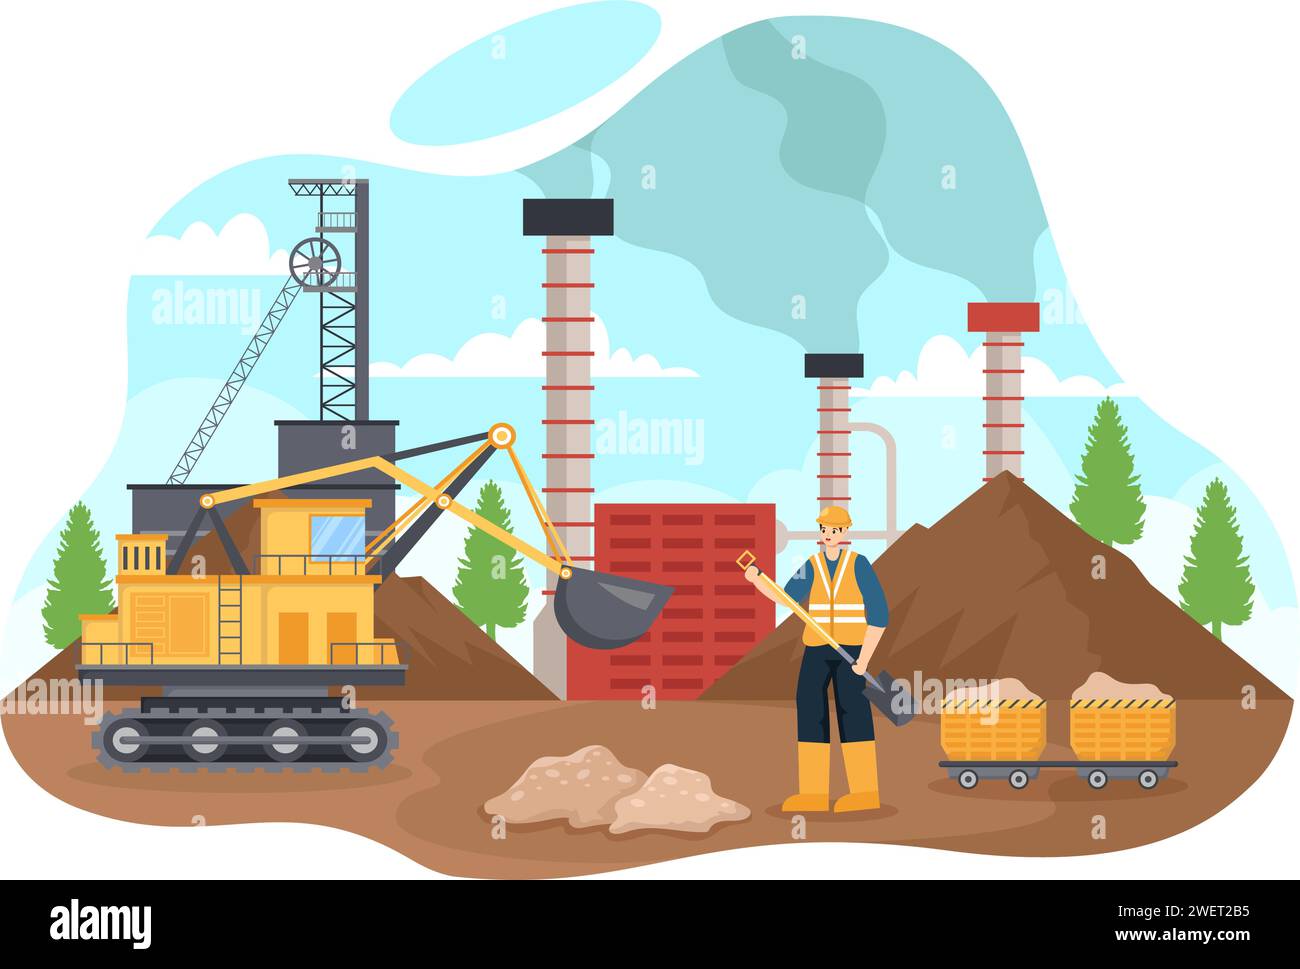 Mining Company Vektor-Illustration mit schweren gelben Dumper Trucks für Sandbergbau industriellen Prozess oder Transport im flachen Karikaturhintergrund Stock Vektor